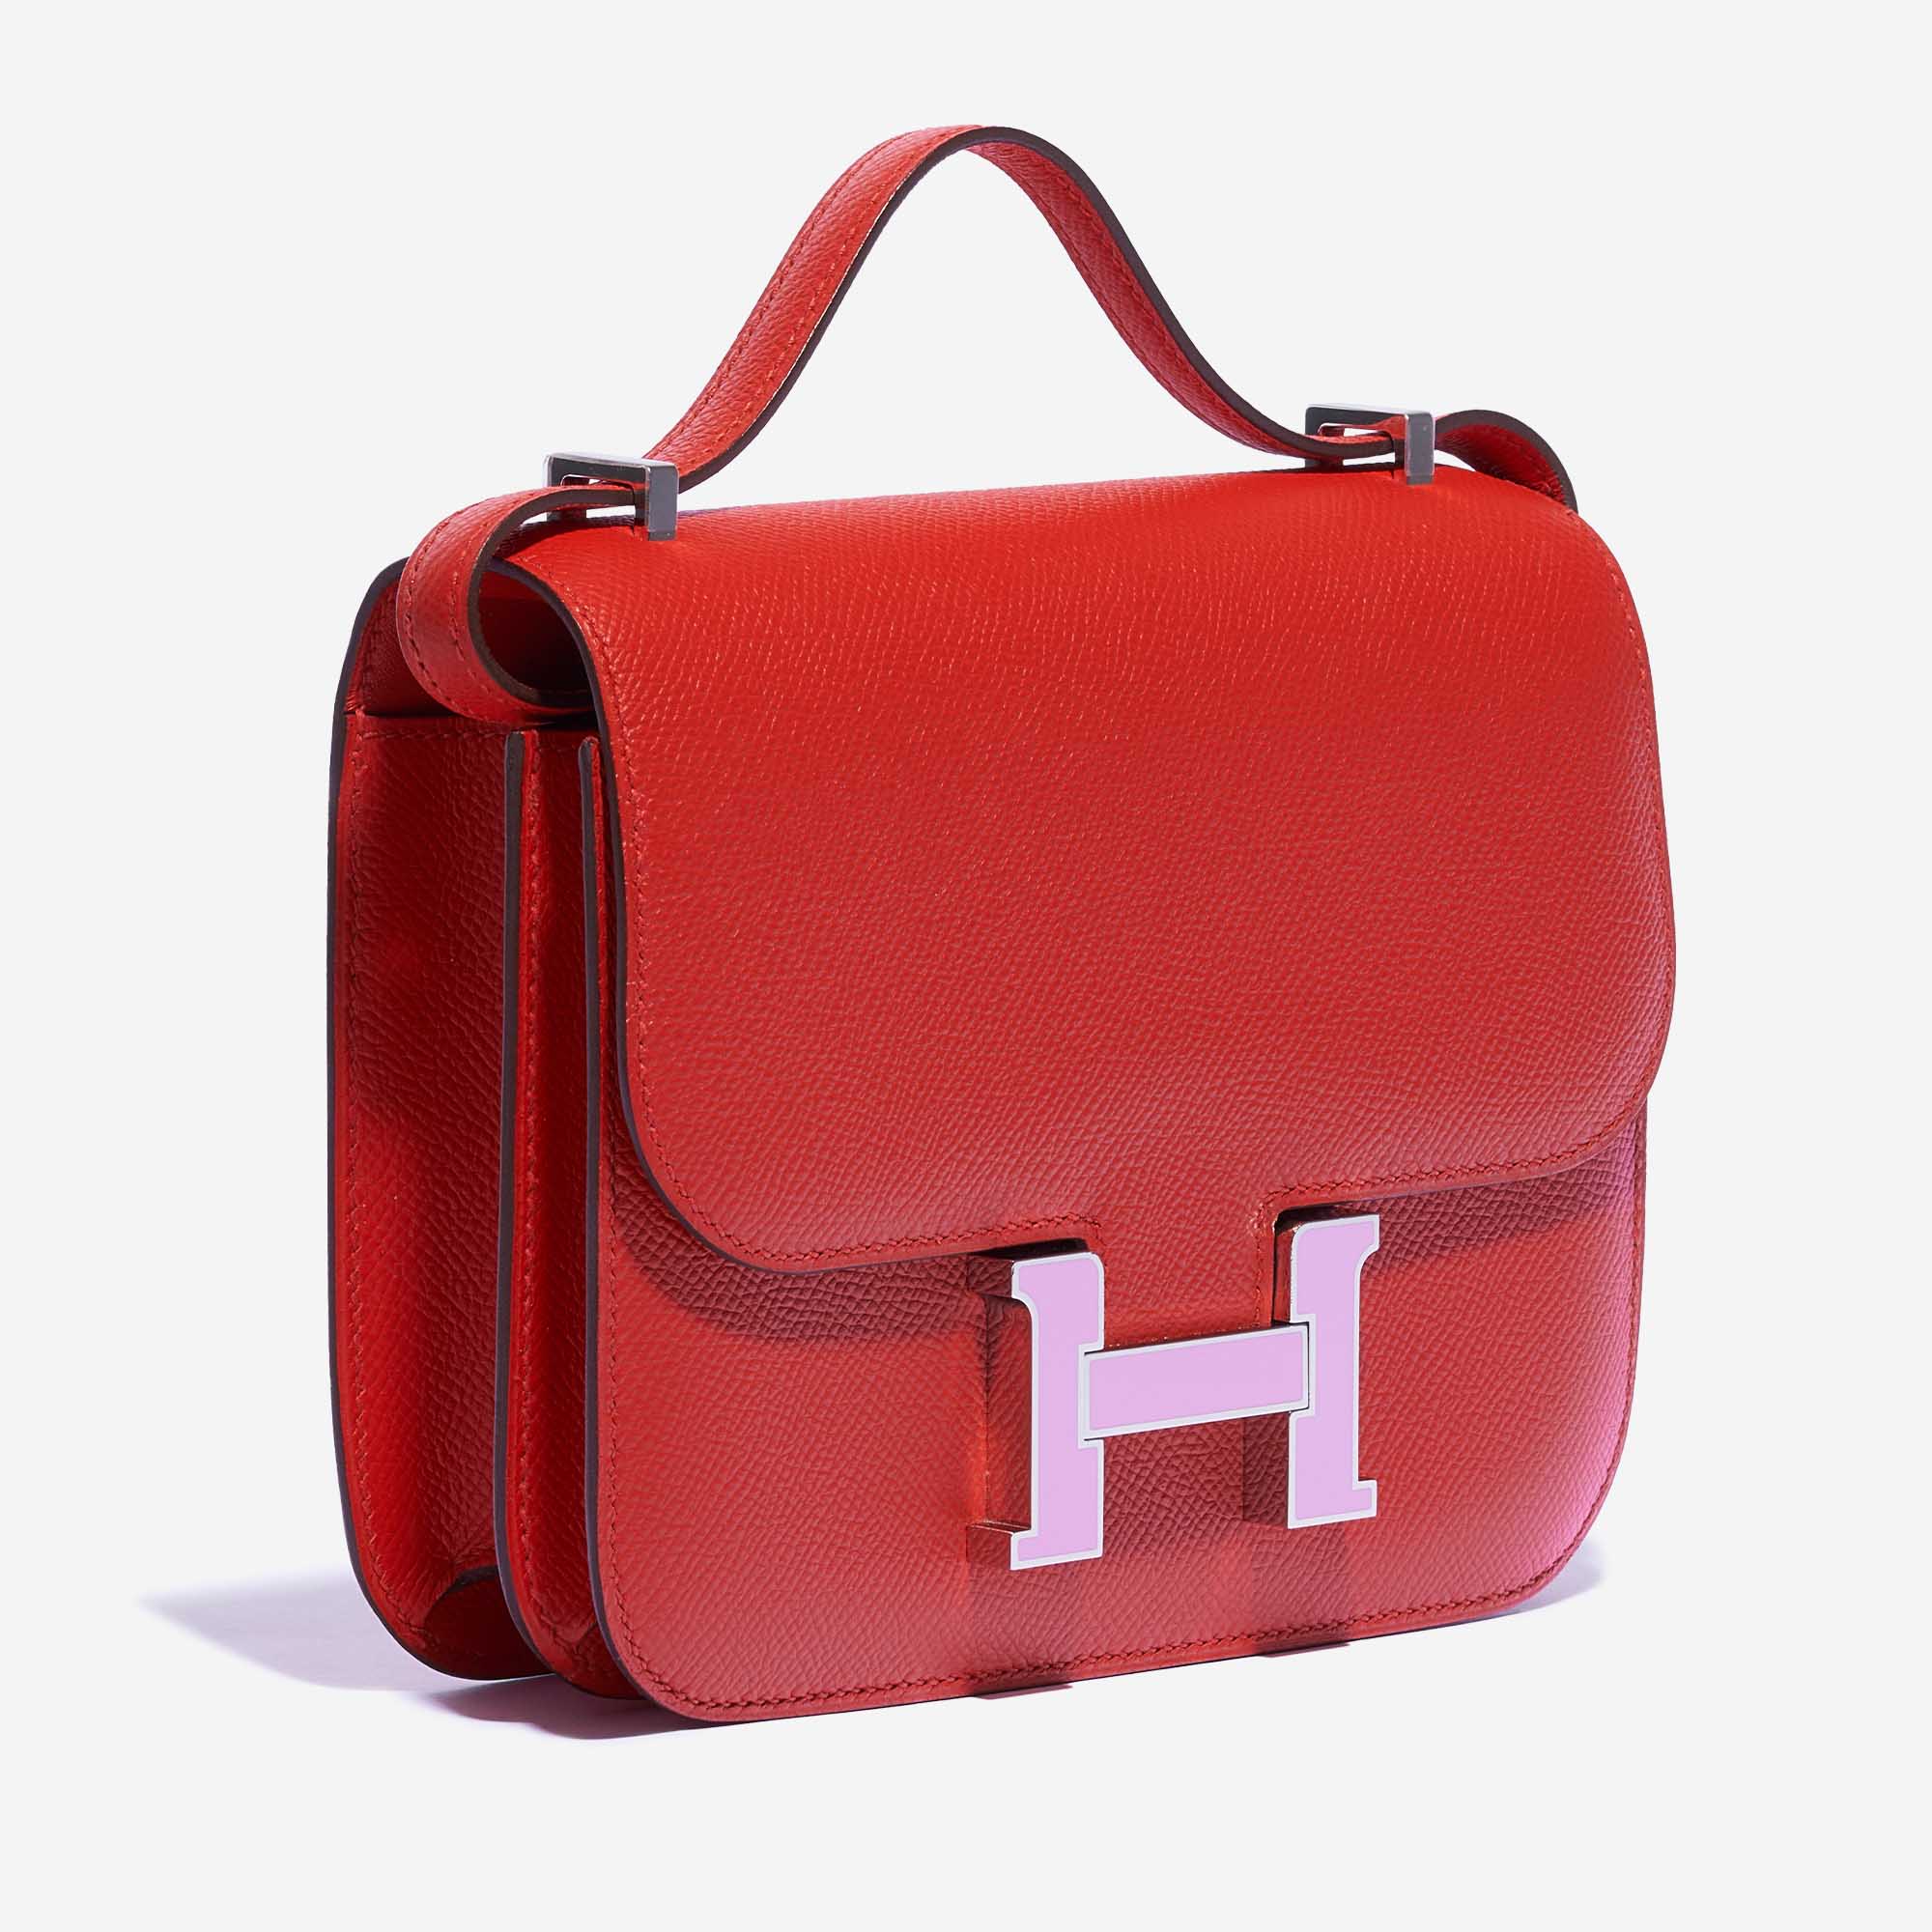 Sac Hermès d'occasion Constance 18 Epsom / Emaille Rouge de Coeur / Mauve Silvestre Red | Vendez votre sac de créateur sur Saclab.com